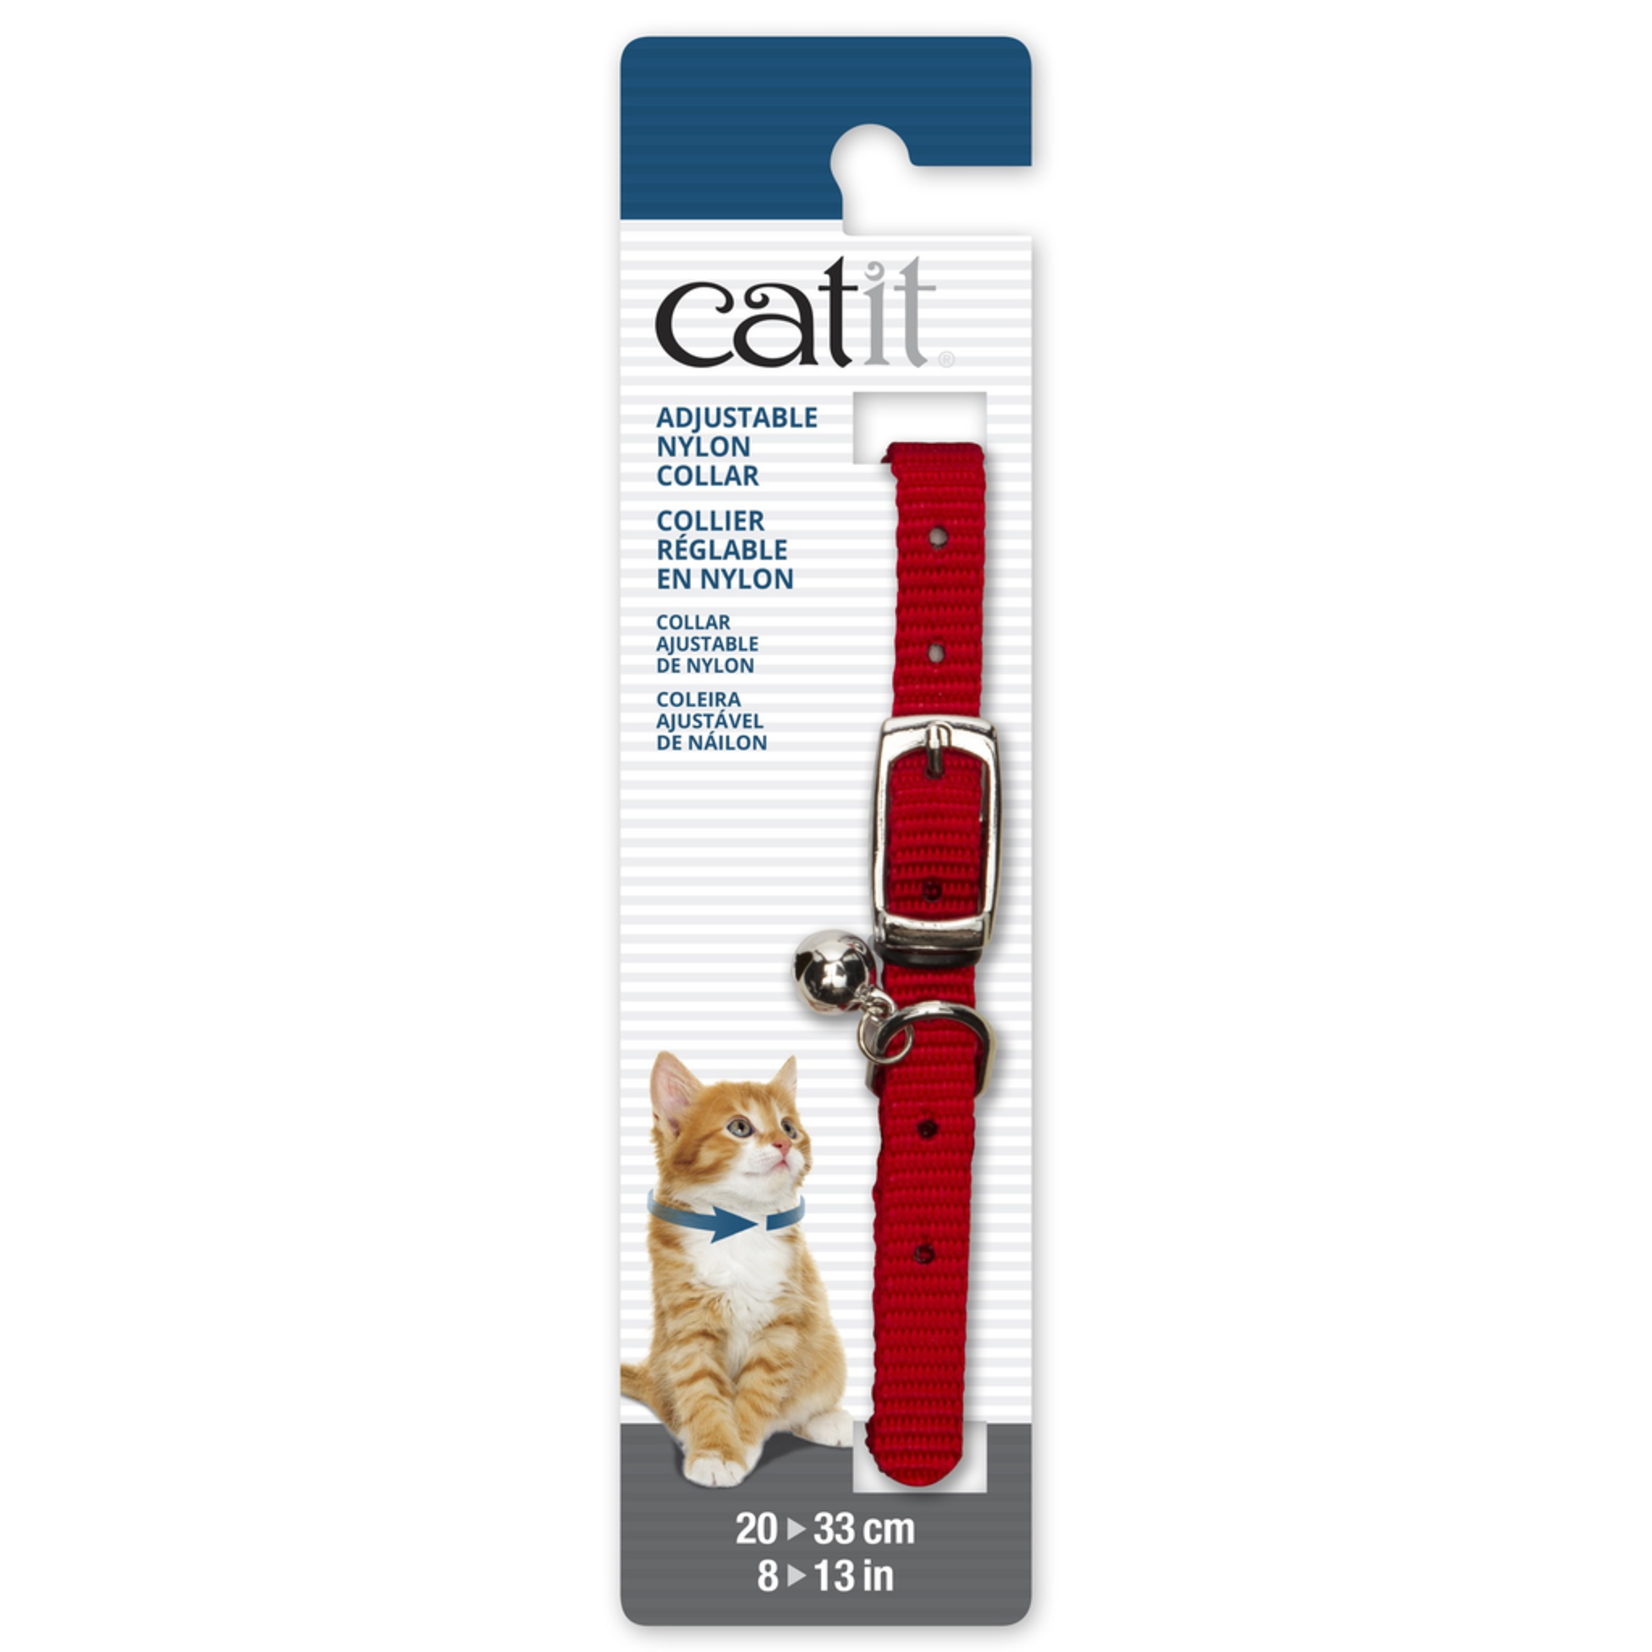 CAT IT (W) Catit Adjustable Nylon Collar - Red - 20-33 cm (8-13 in)